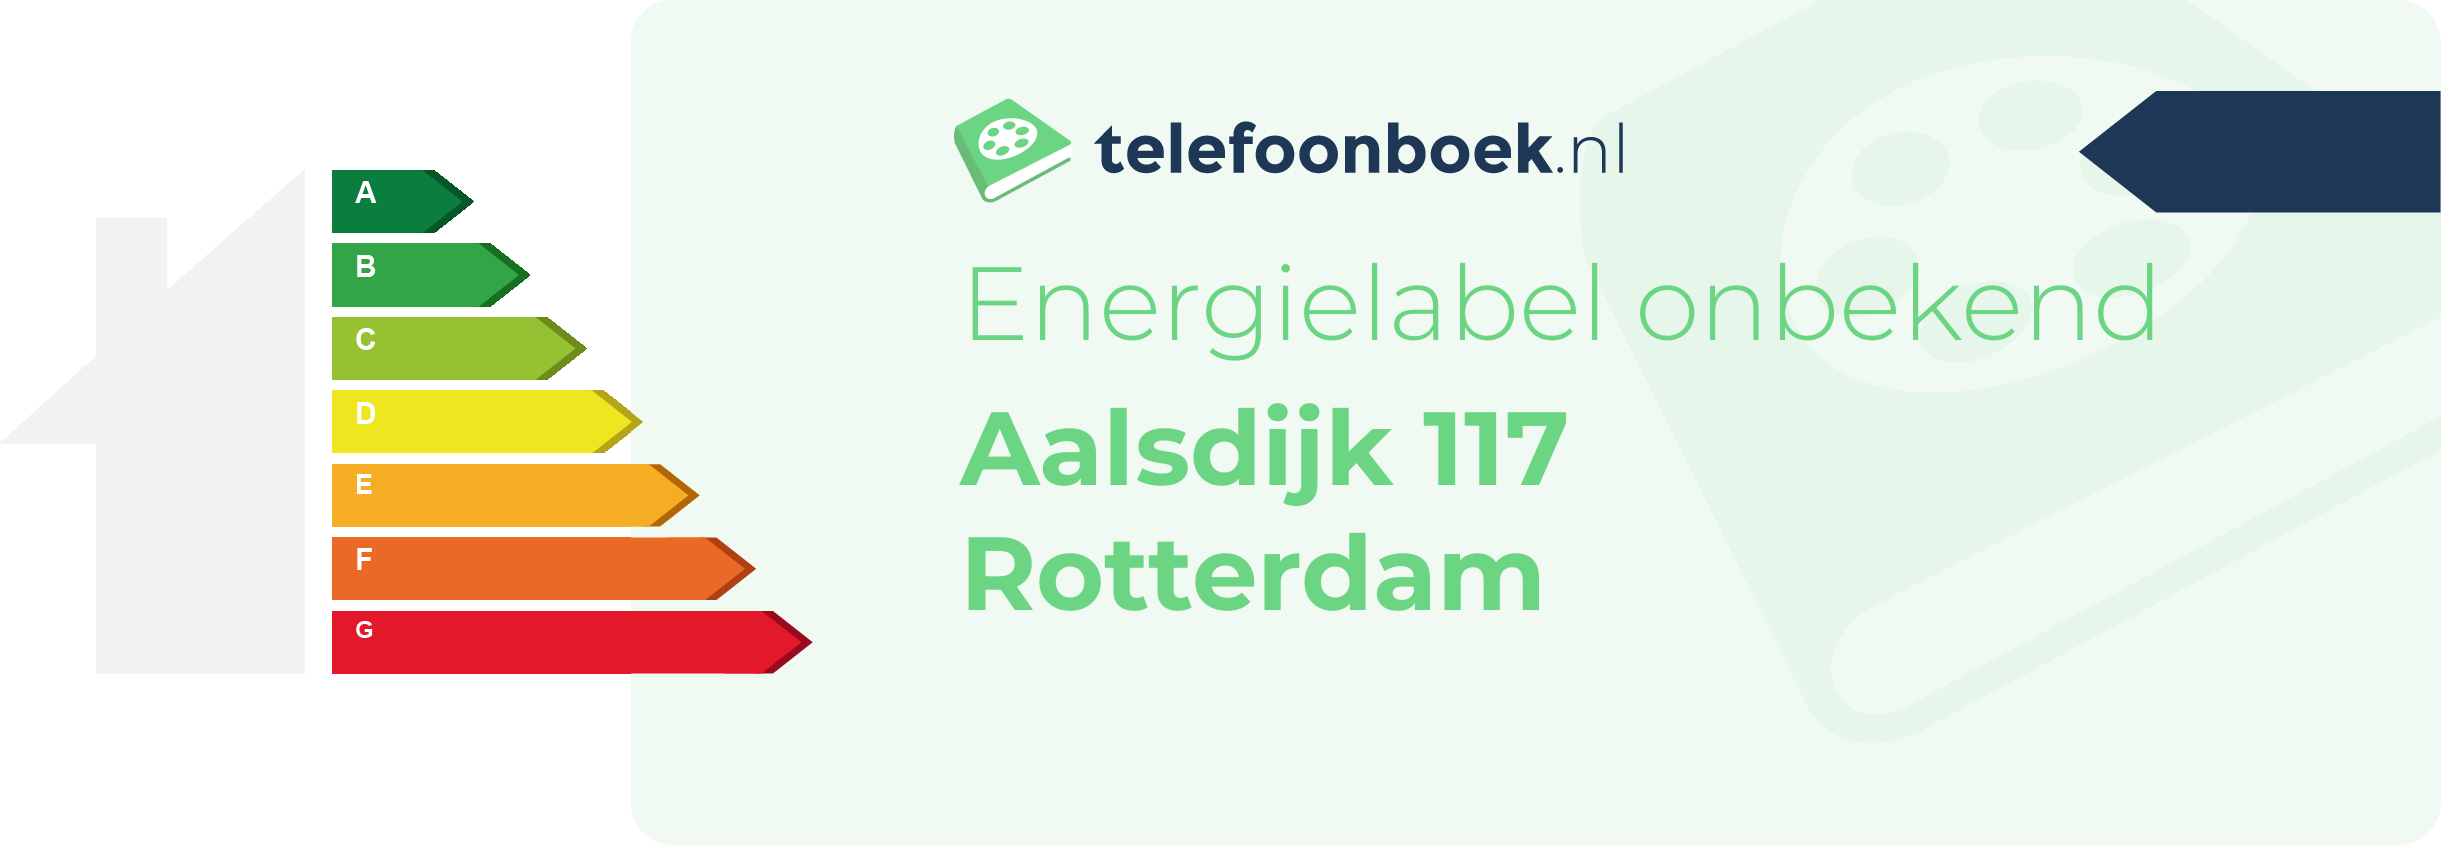 Energielabel Aalsdijk 117 Rotterdam